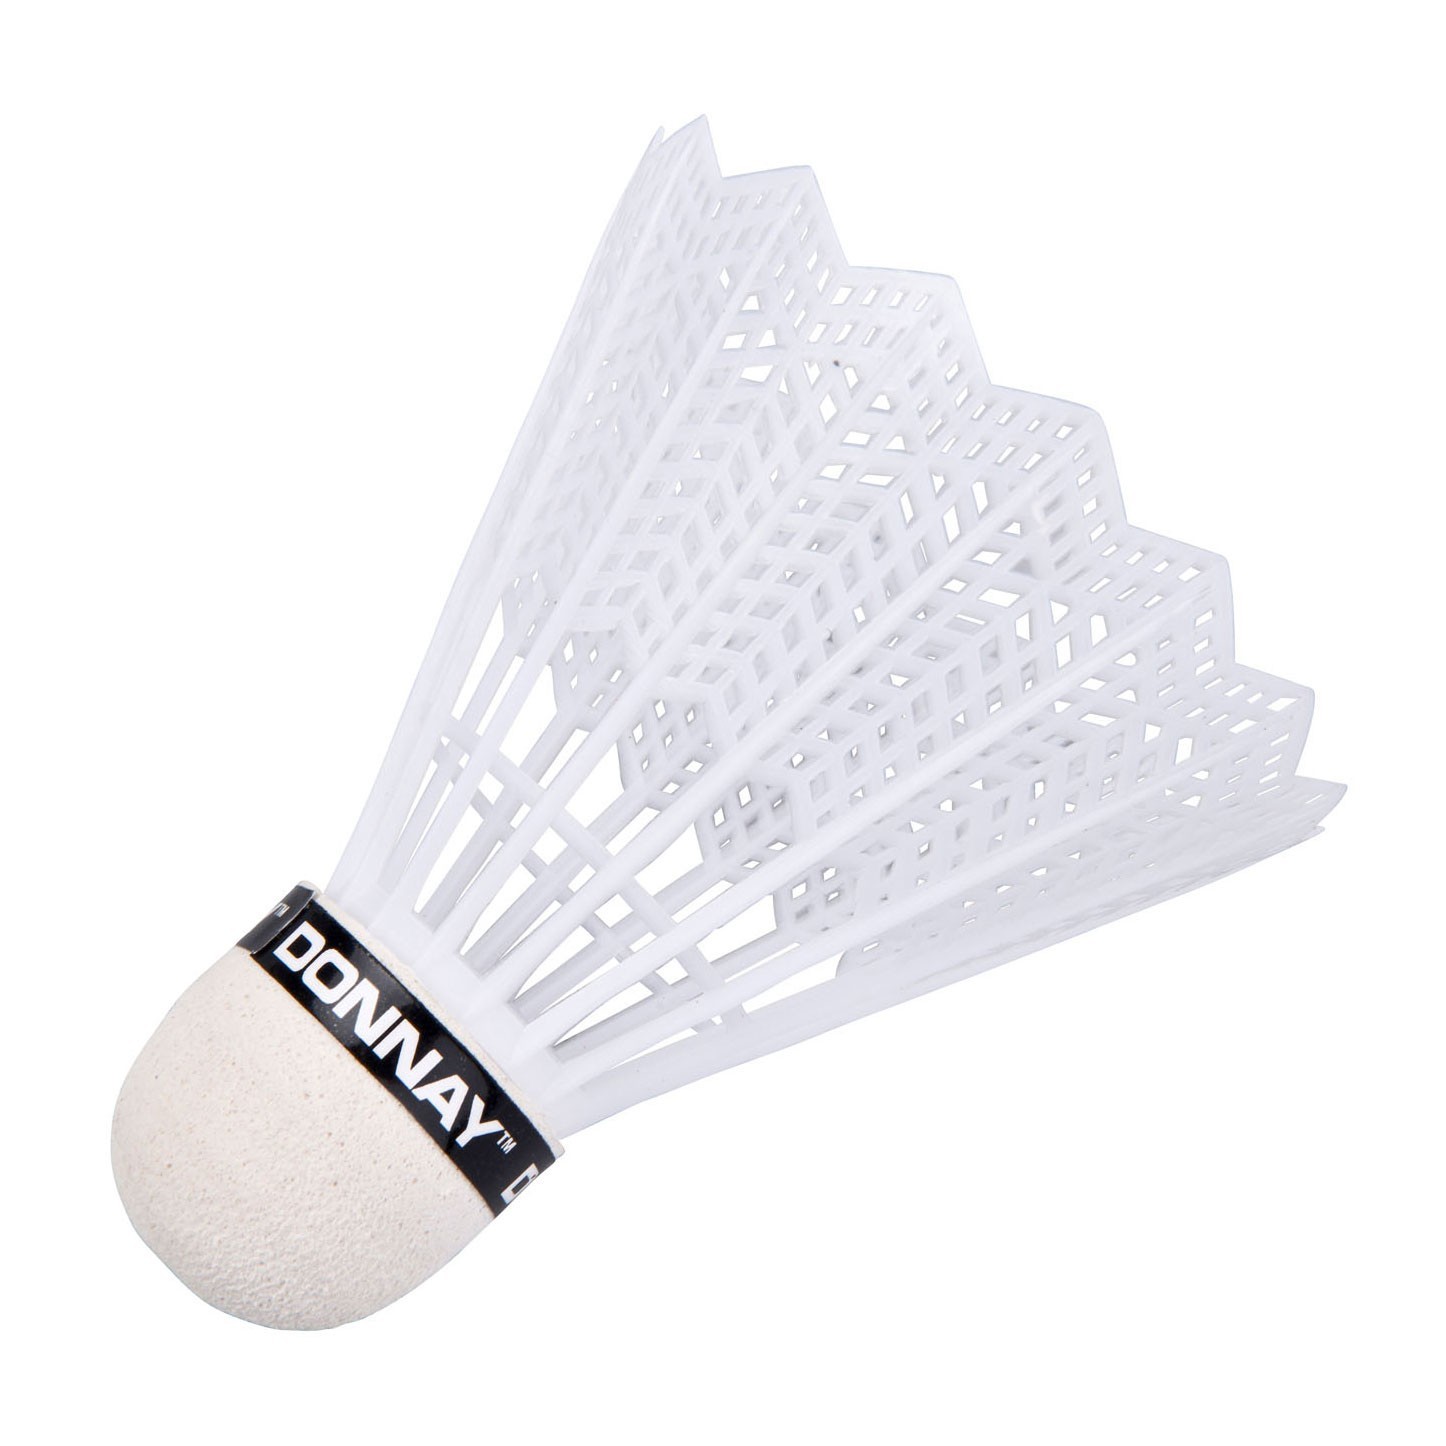 5 stk donnay fjerbolde til badminton hvide